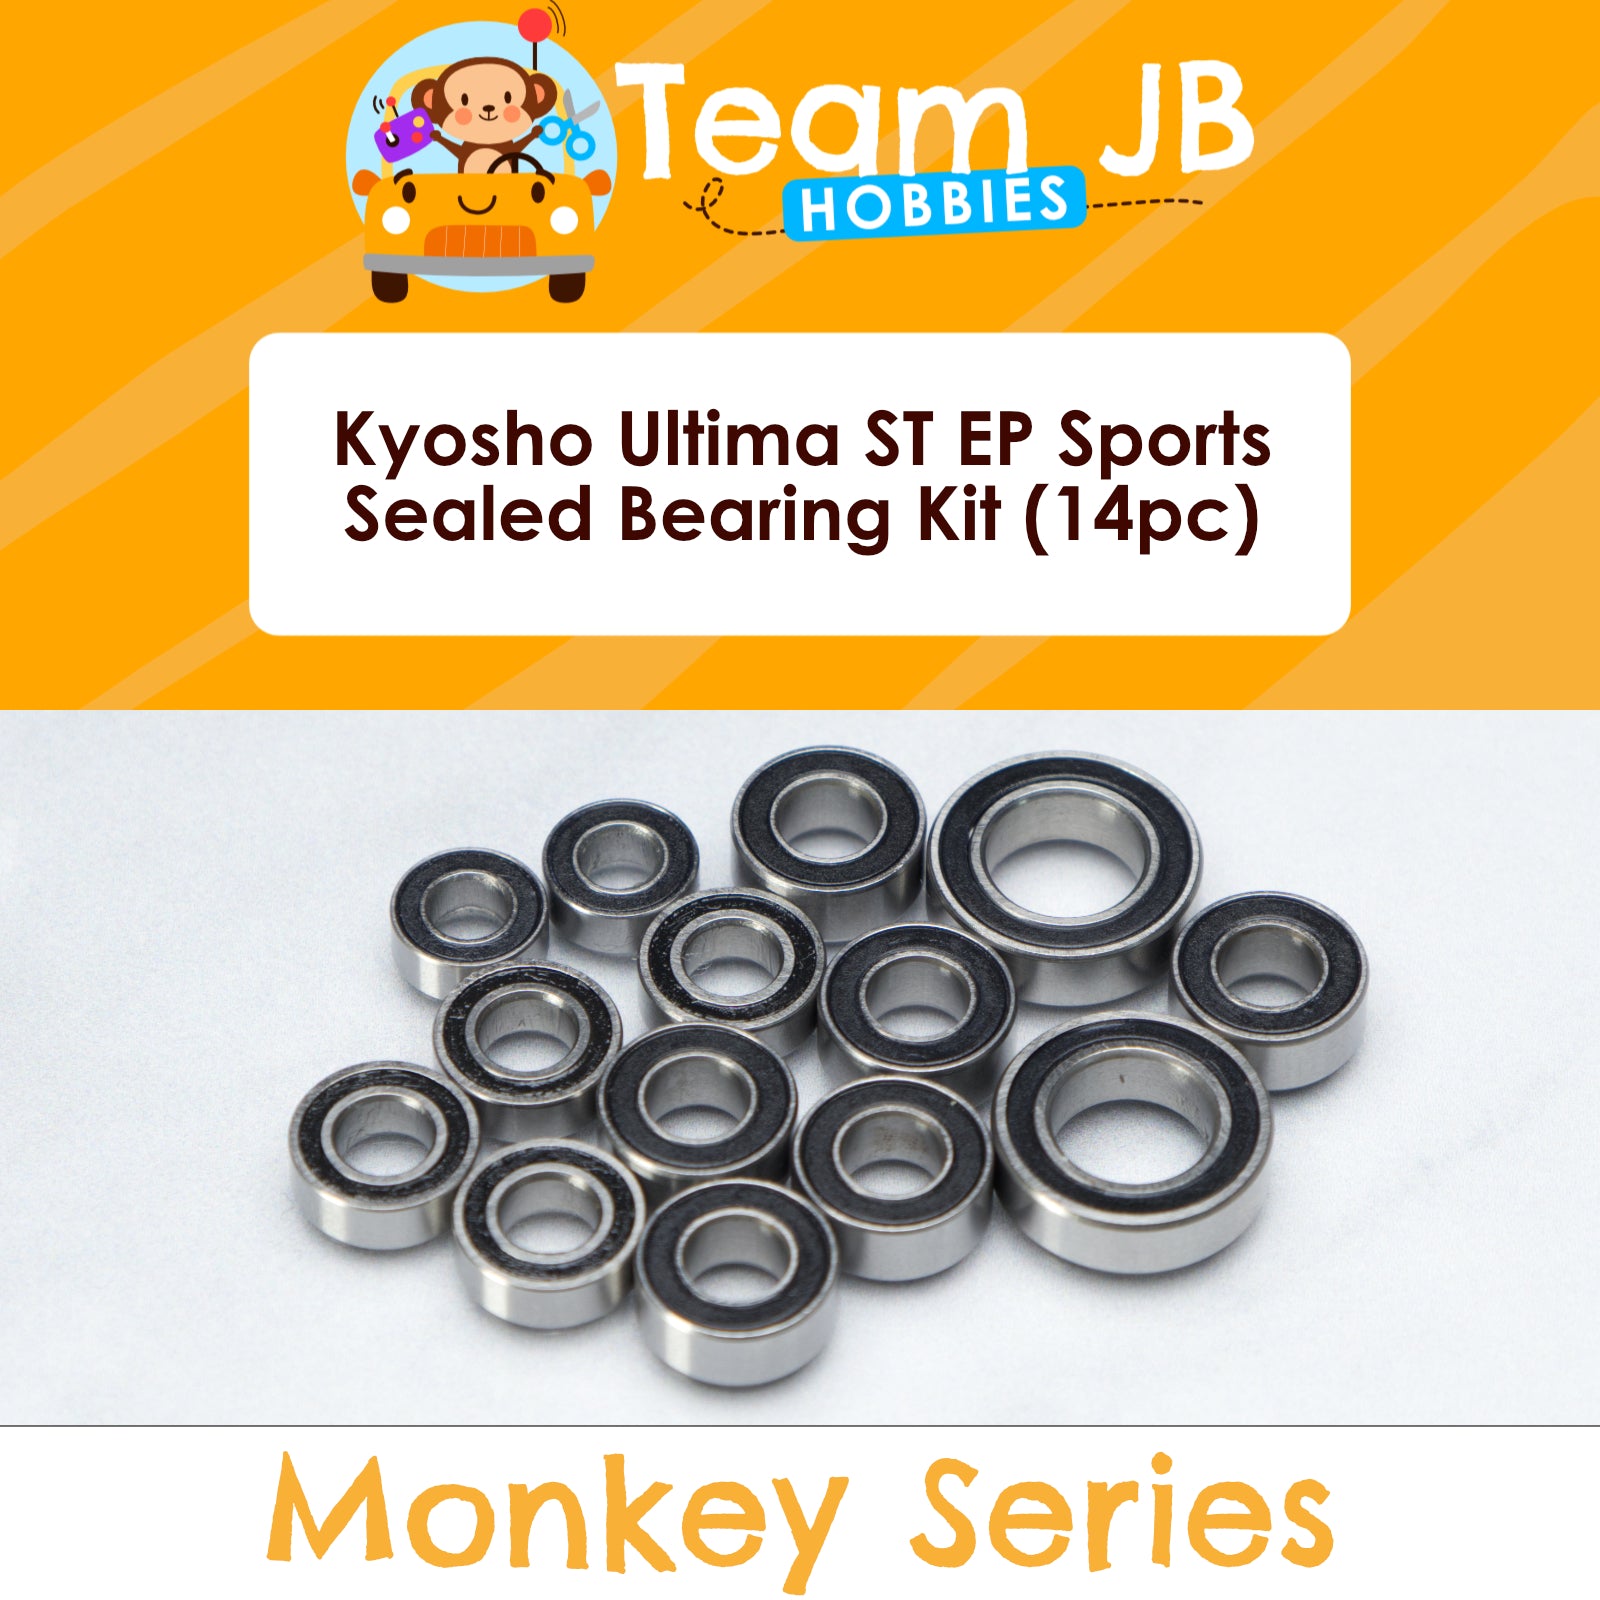 Kyosho Ultima ST EP Sports - Sealed Bearing Kit